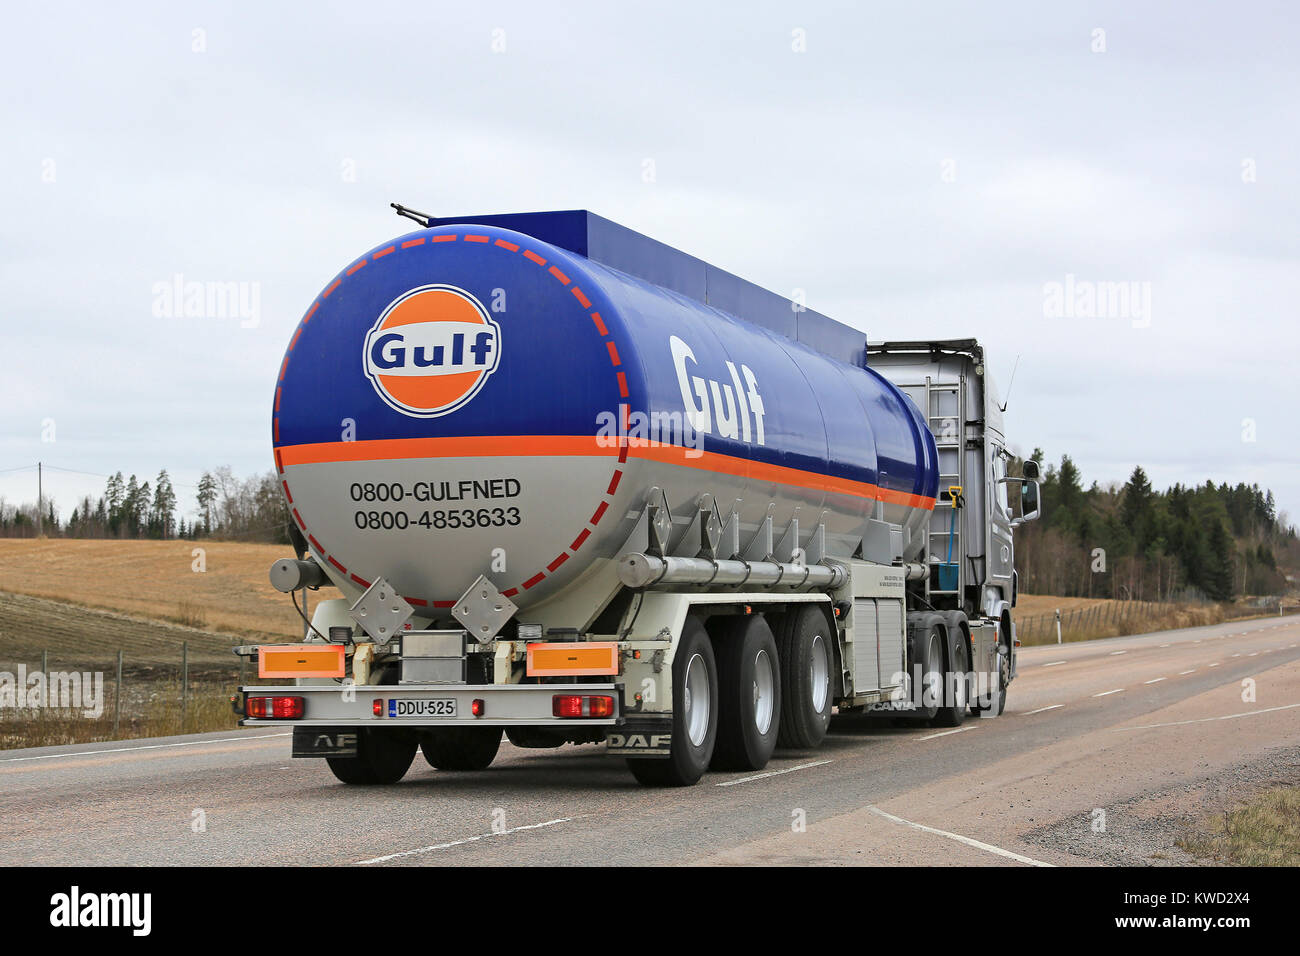 ORIVESI, Finlandia - 17 Maggio 2017: Scania R560 semi autobotte per il petrolio del Golfo per il trasporto del carburante di M. Rautalin sulla strada in Finlandia centrale. Foto Stock